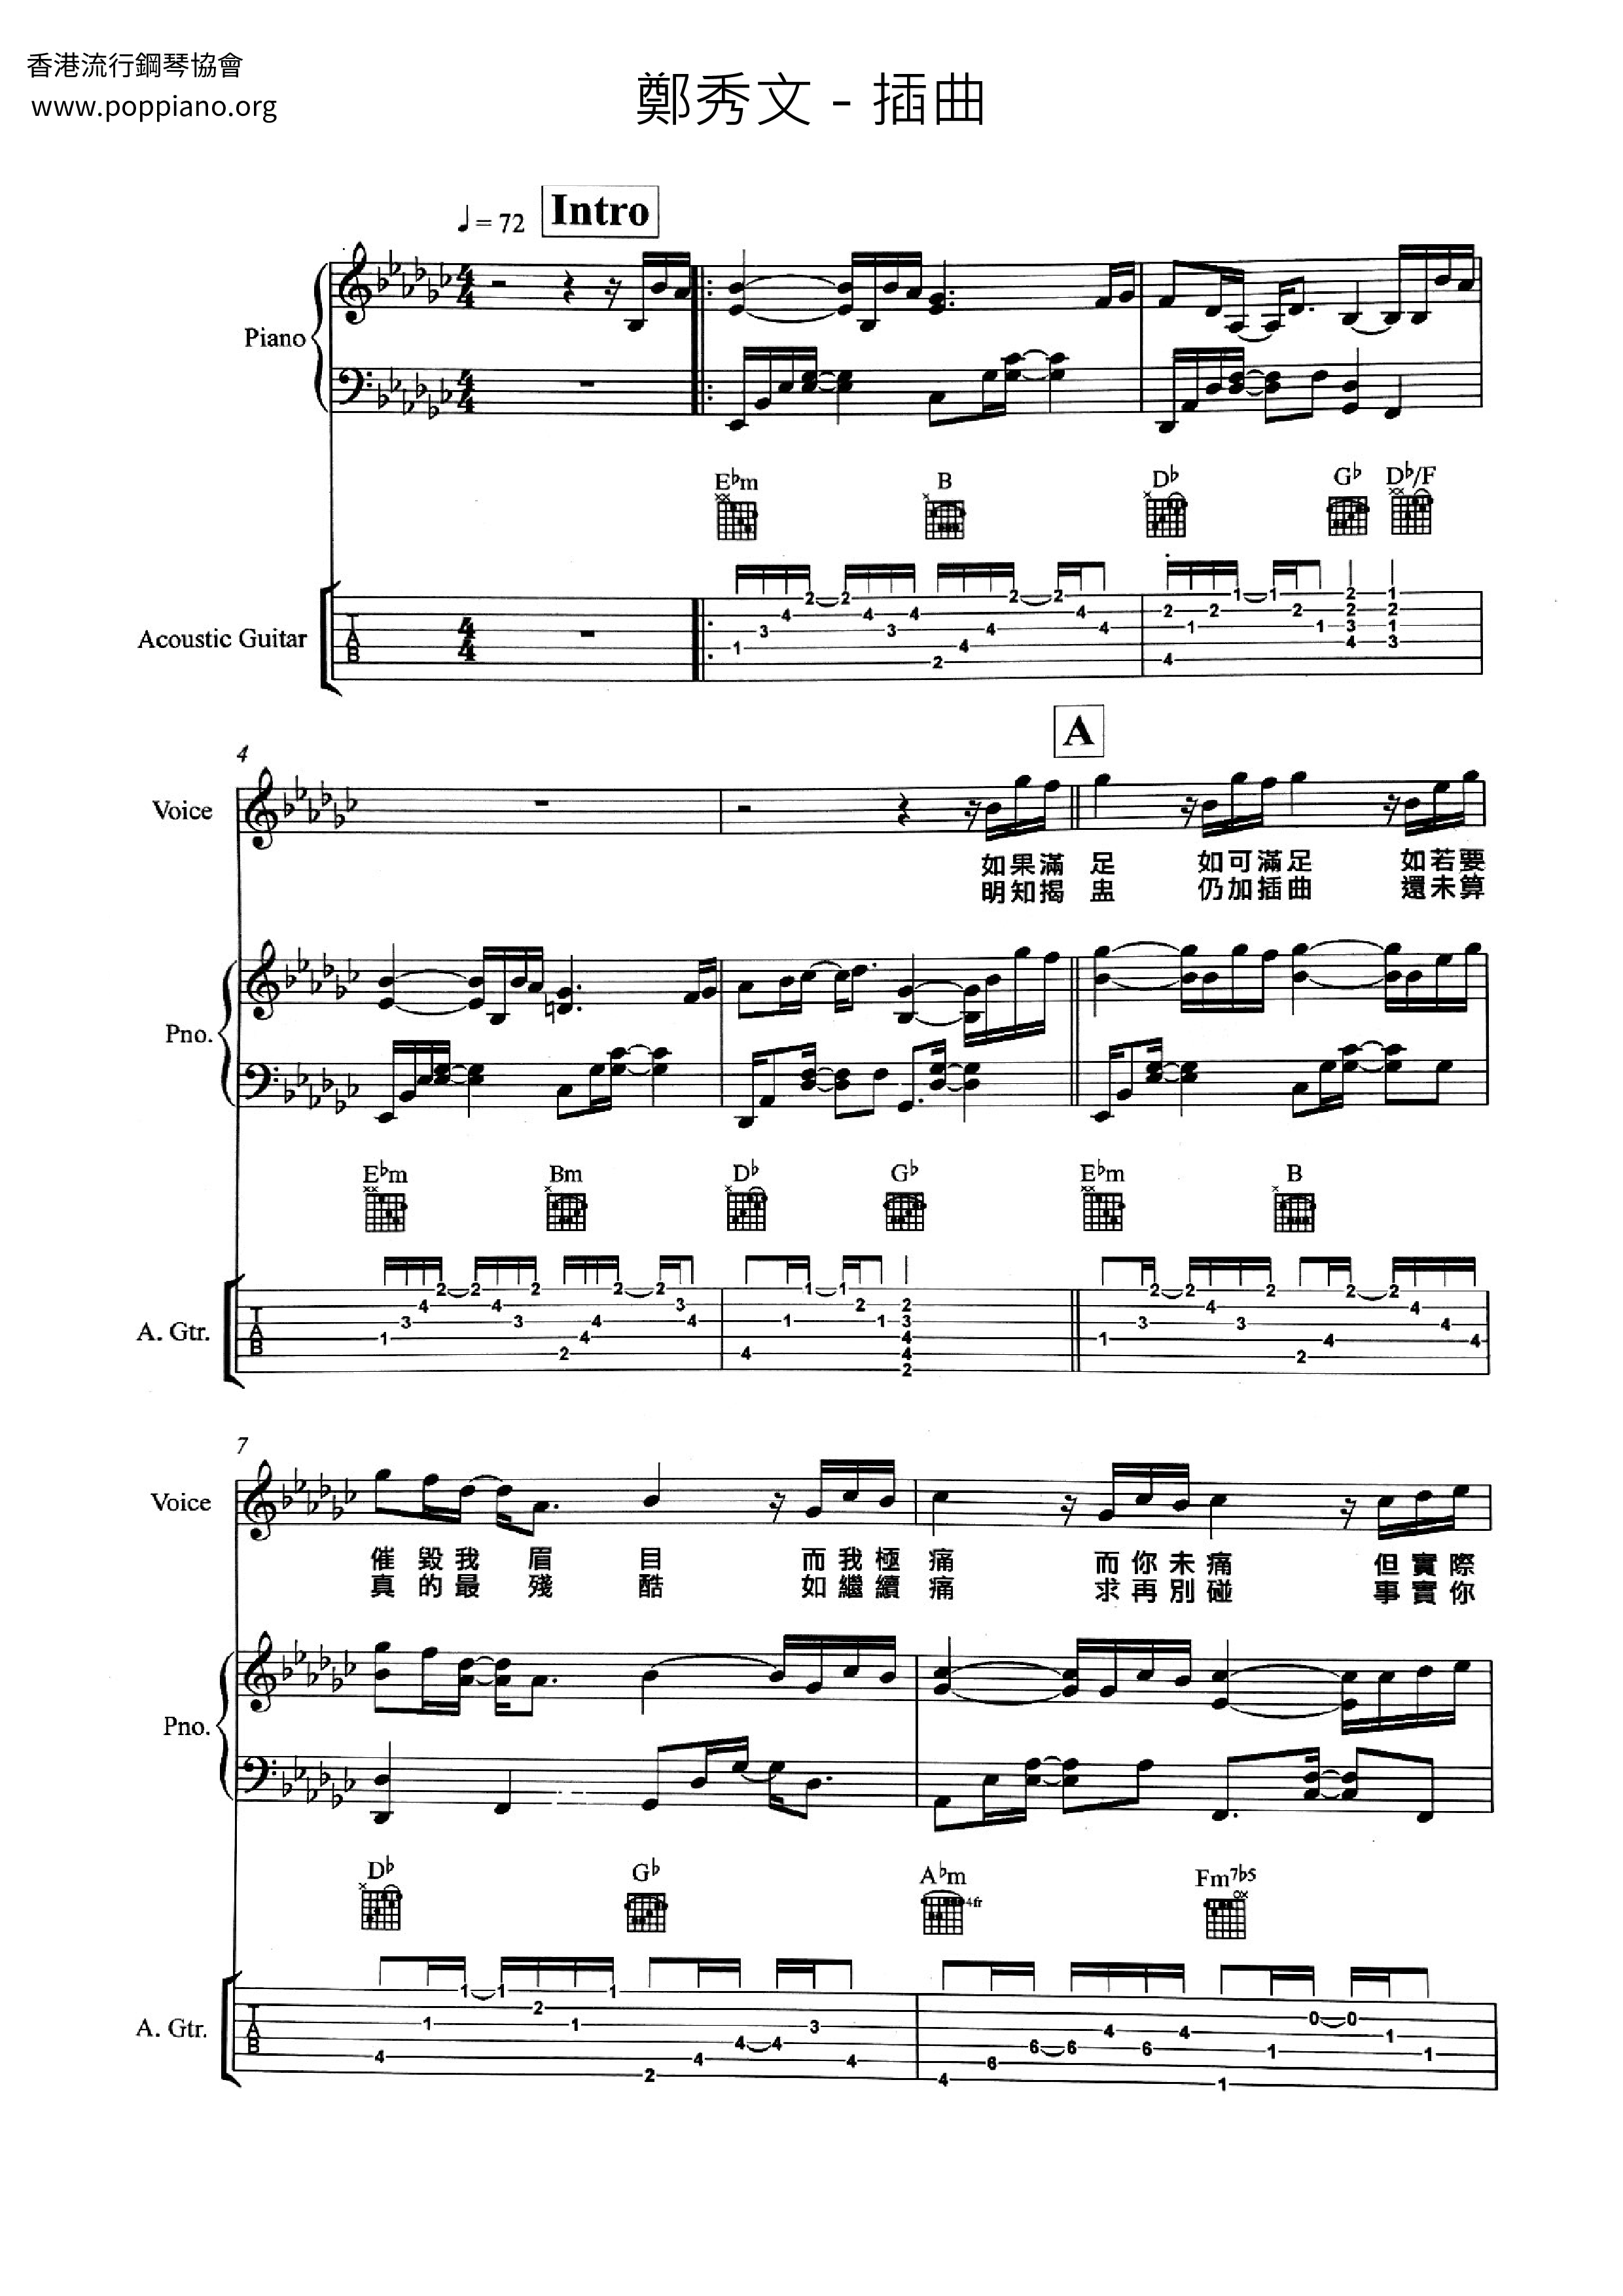 Interlude Score